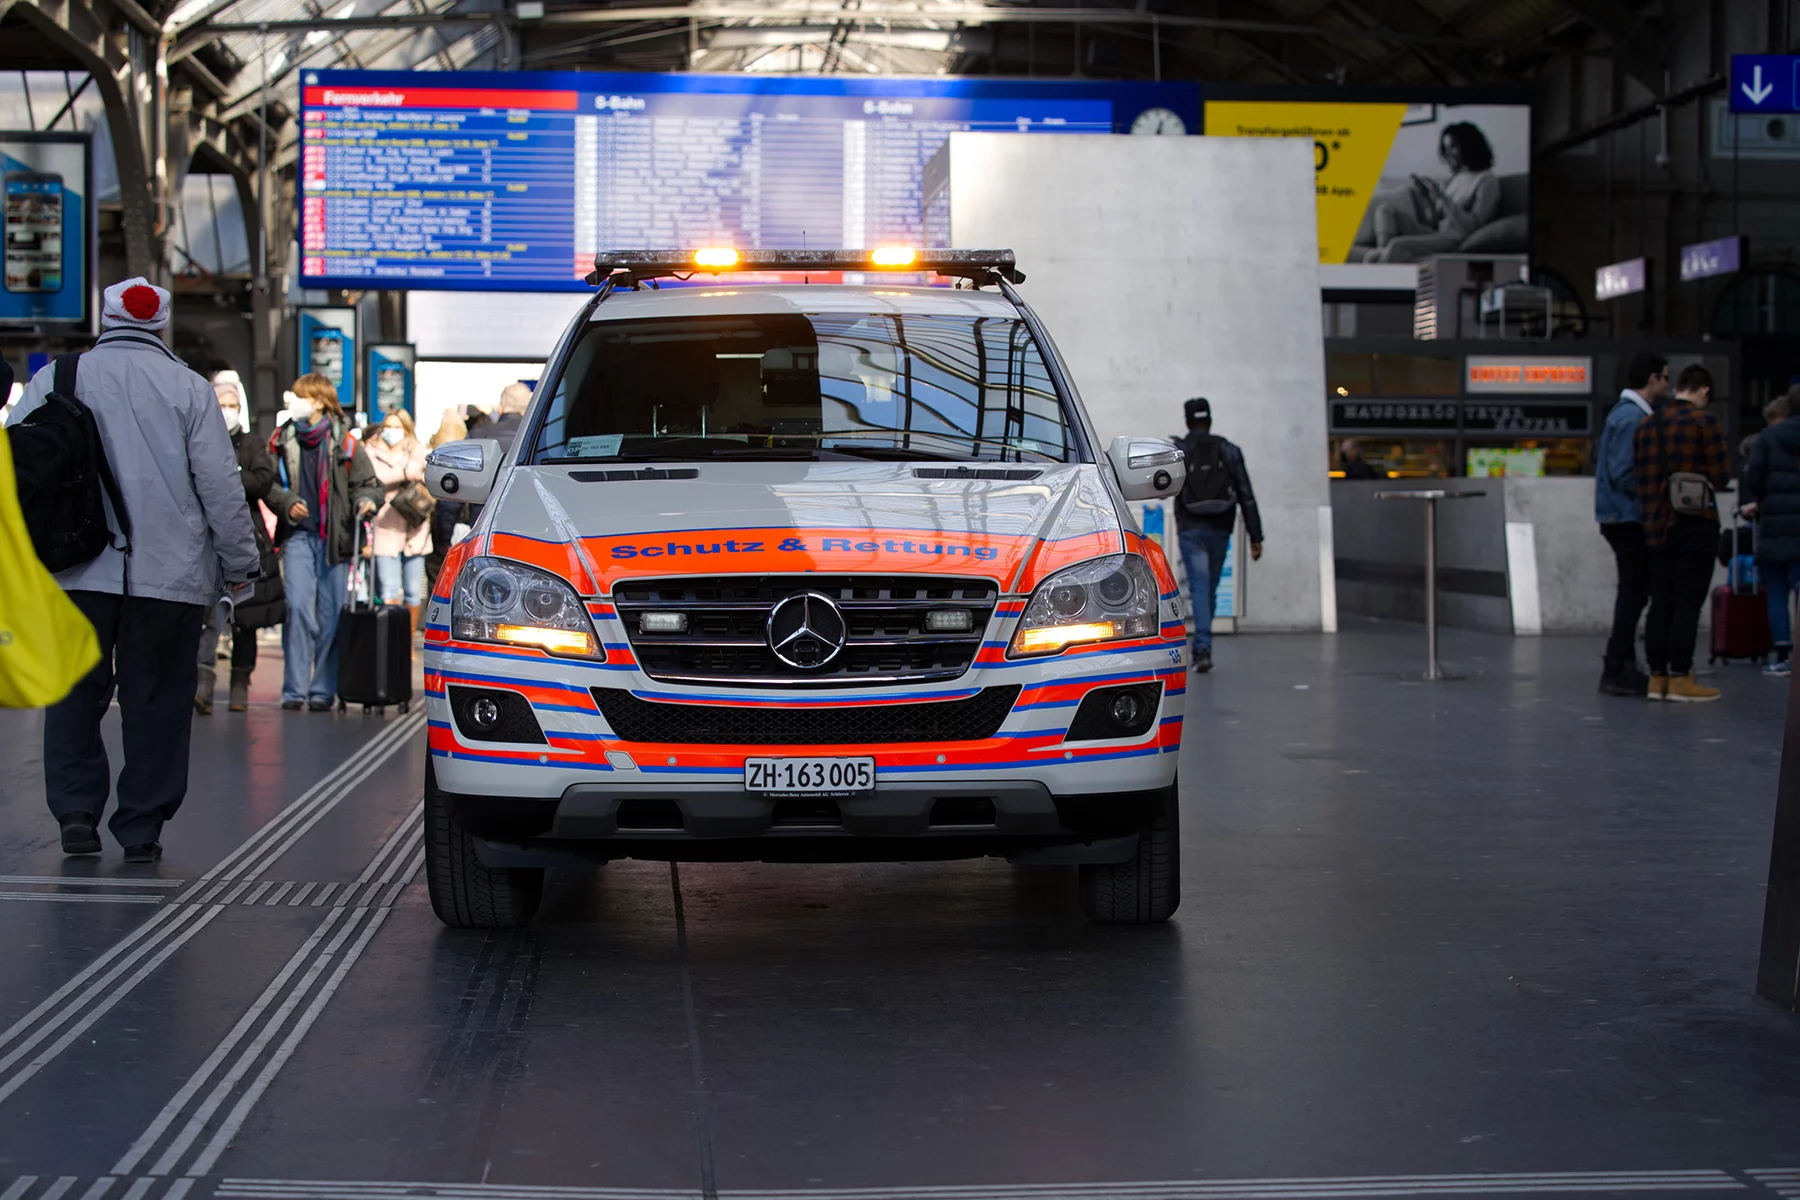 An ambulance at the main train station in Zurich, Switzerland